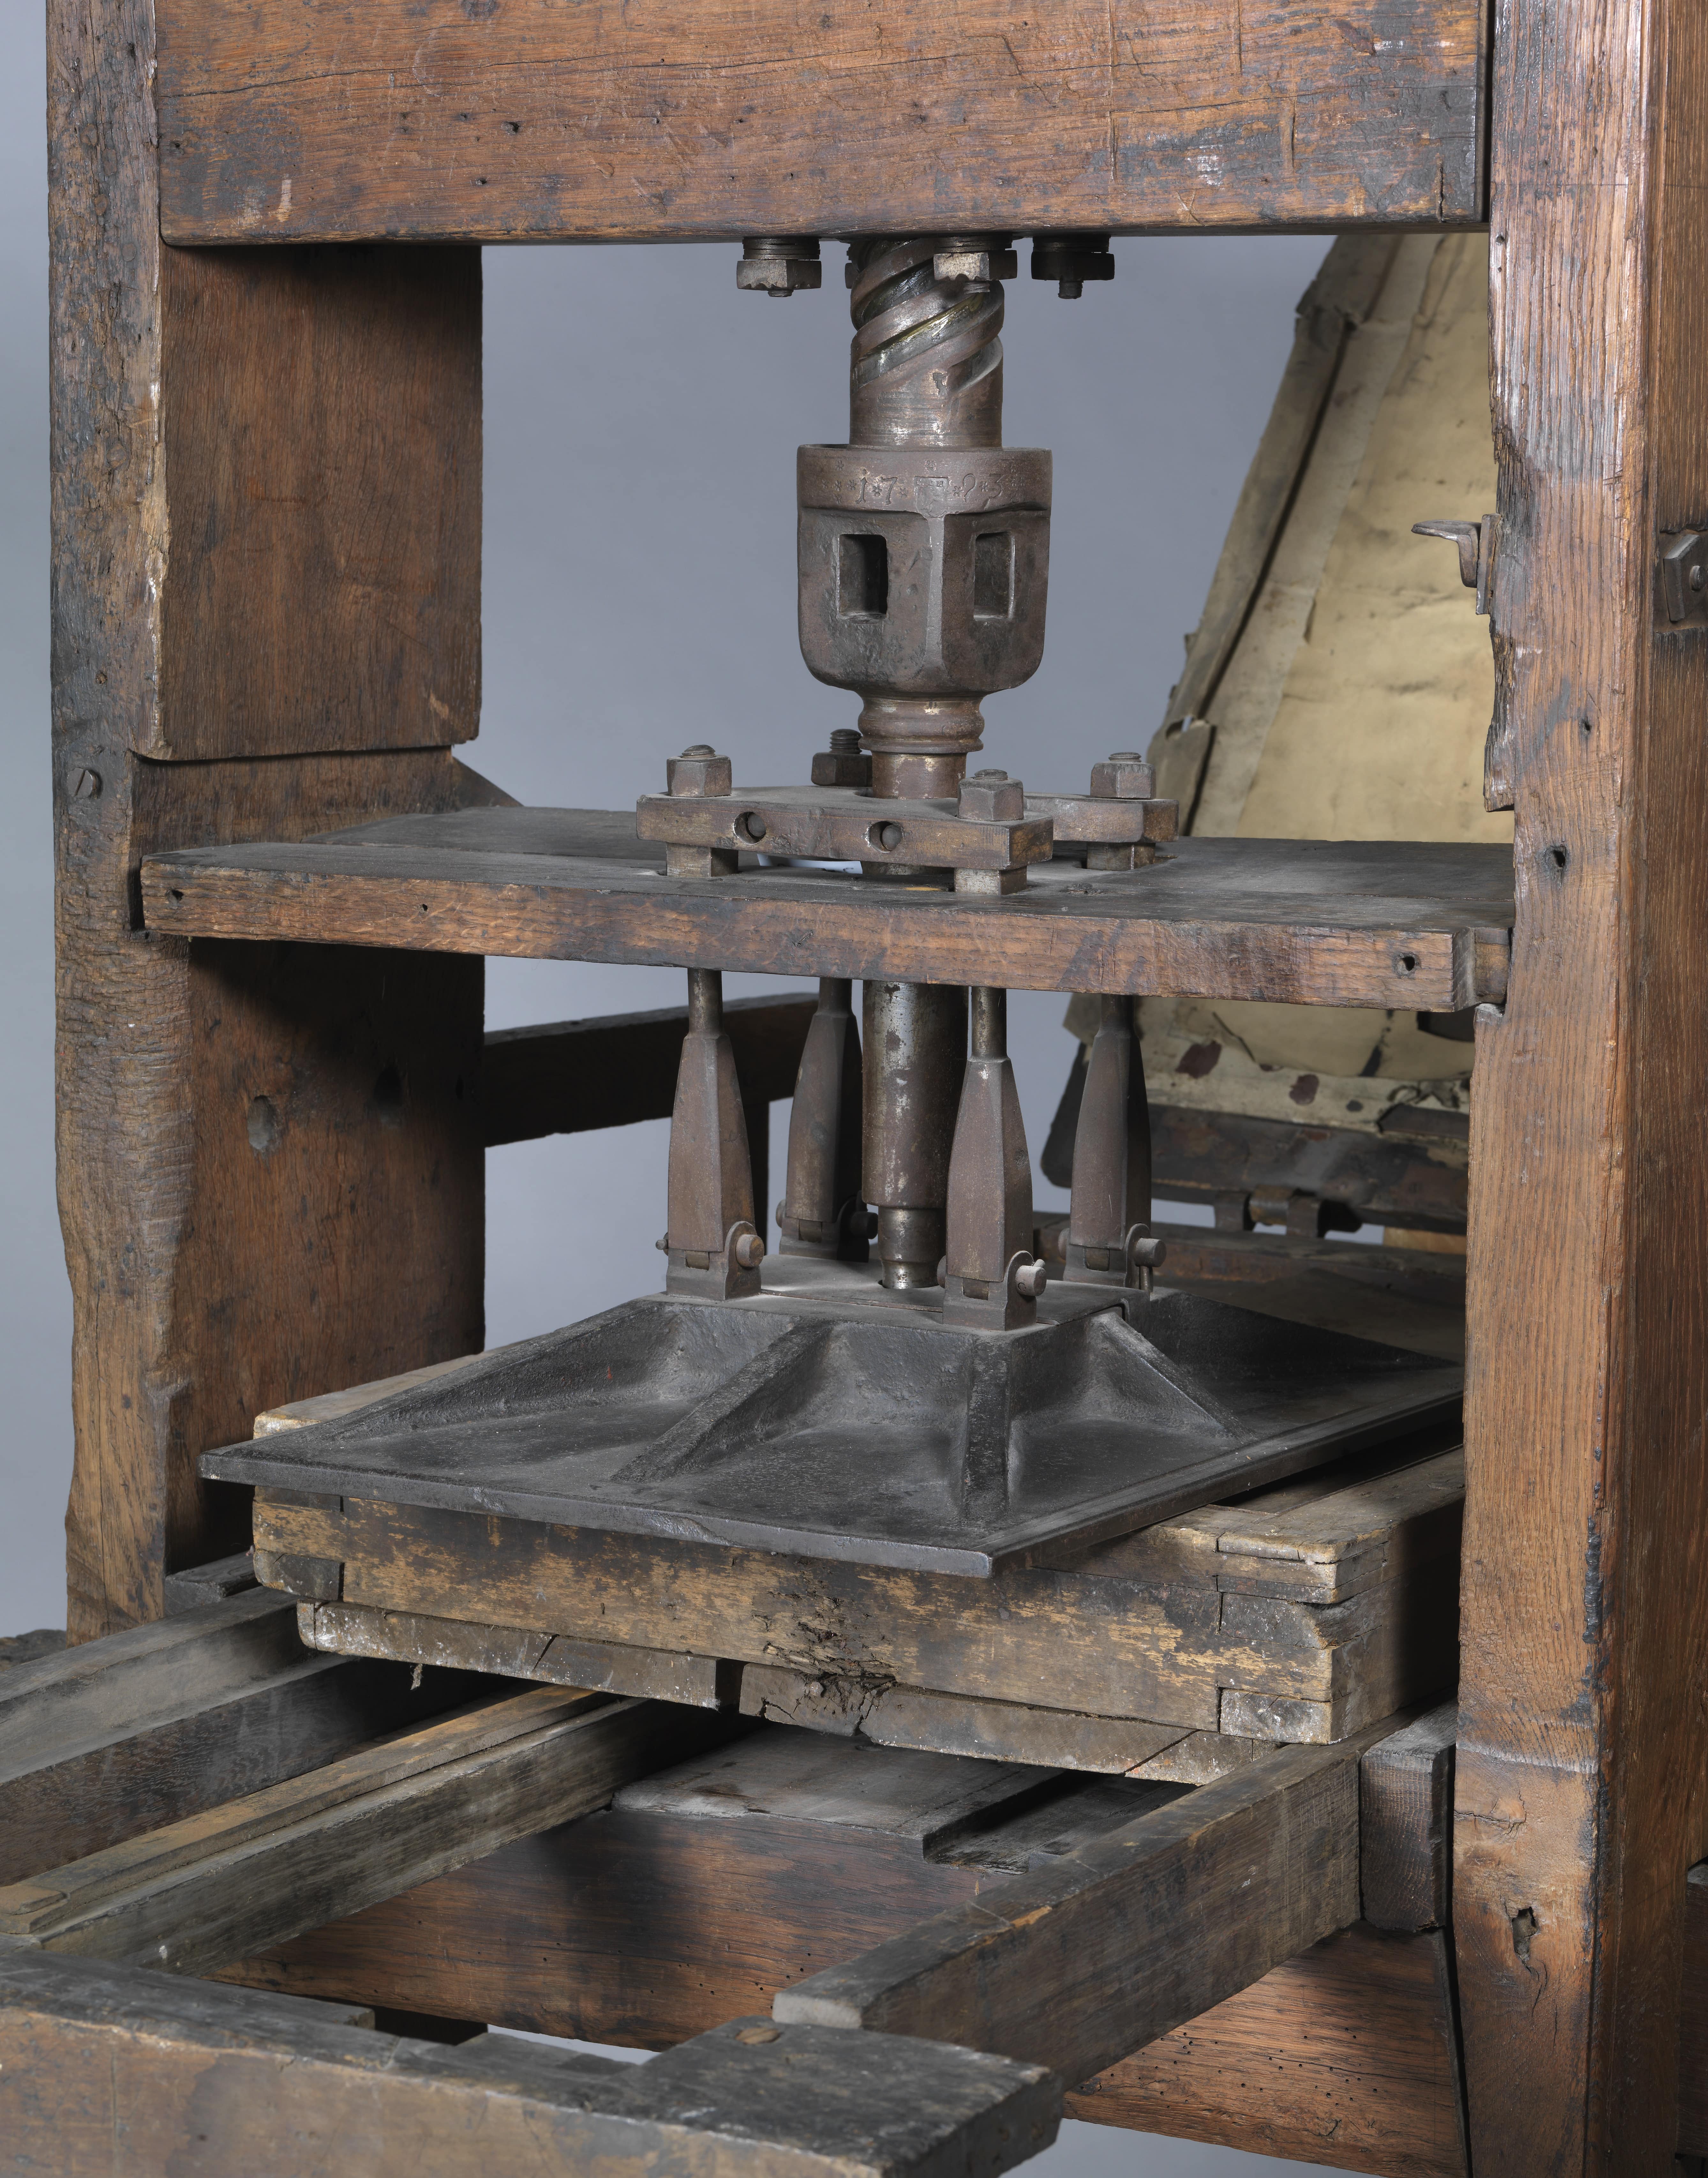 Druckerpresse, auch Buchdruckerpresse oder Handtiegelpresse, 1793, Nürnberg